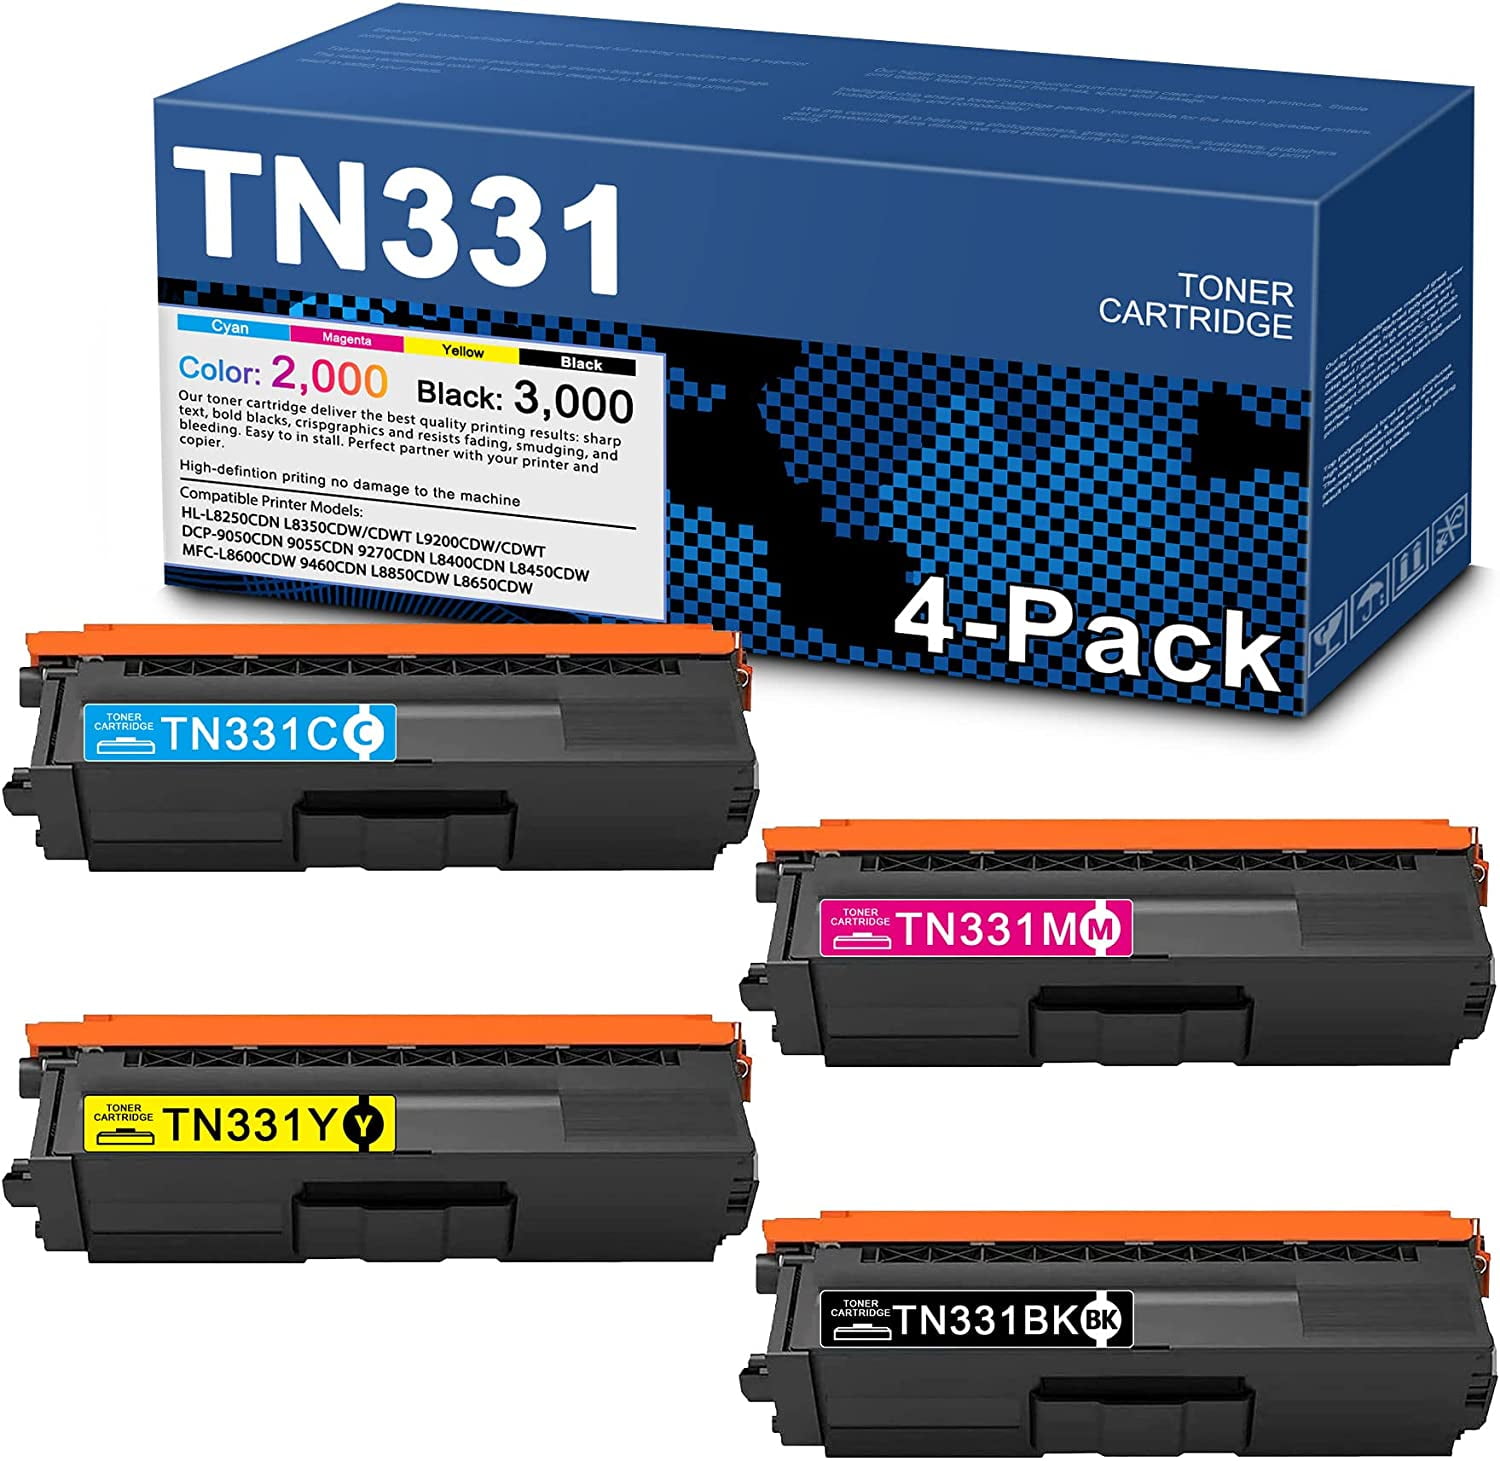 4-Pack, 1BK+1C+1M+1Y) TN331BK TN331M TN331Y Toner Cartridge Compatible Replacement Brother TN-331 HL-L8250CDN L9200CDW/CDWT DCP-9270CDN L8450CDW Printer - Walmart.com